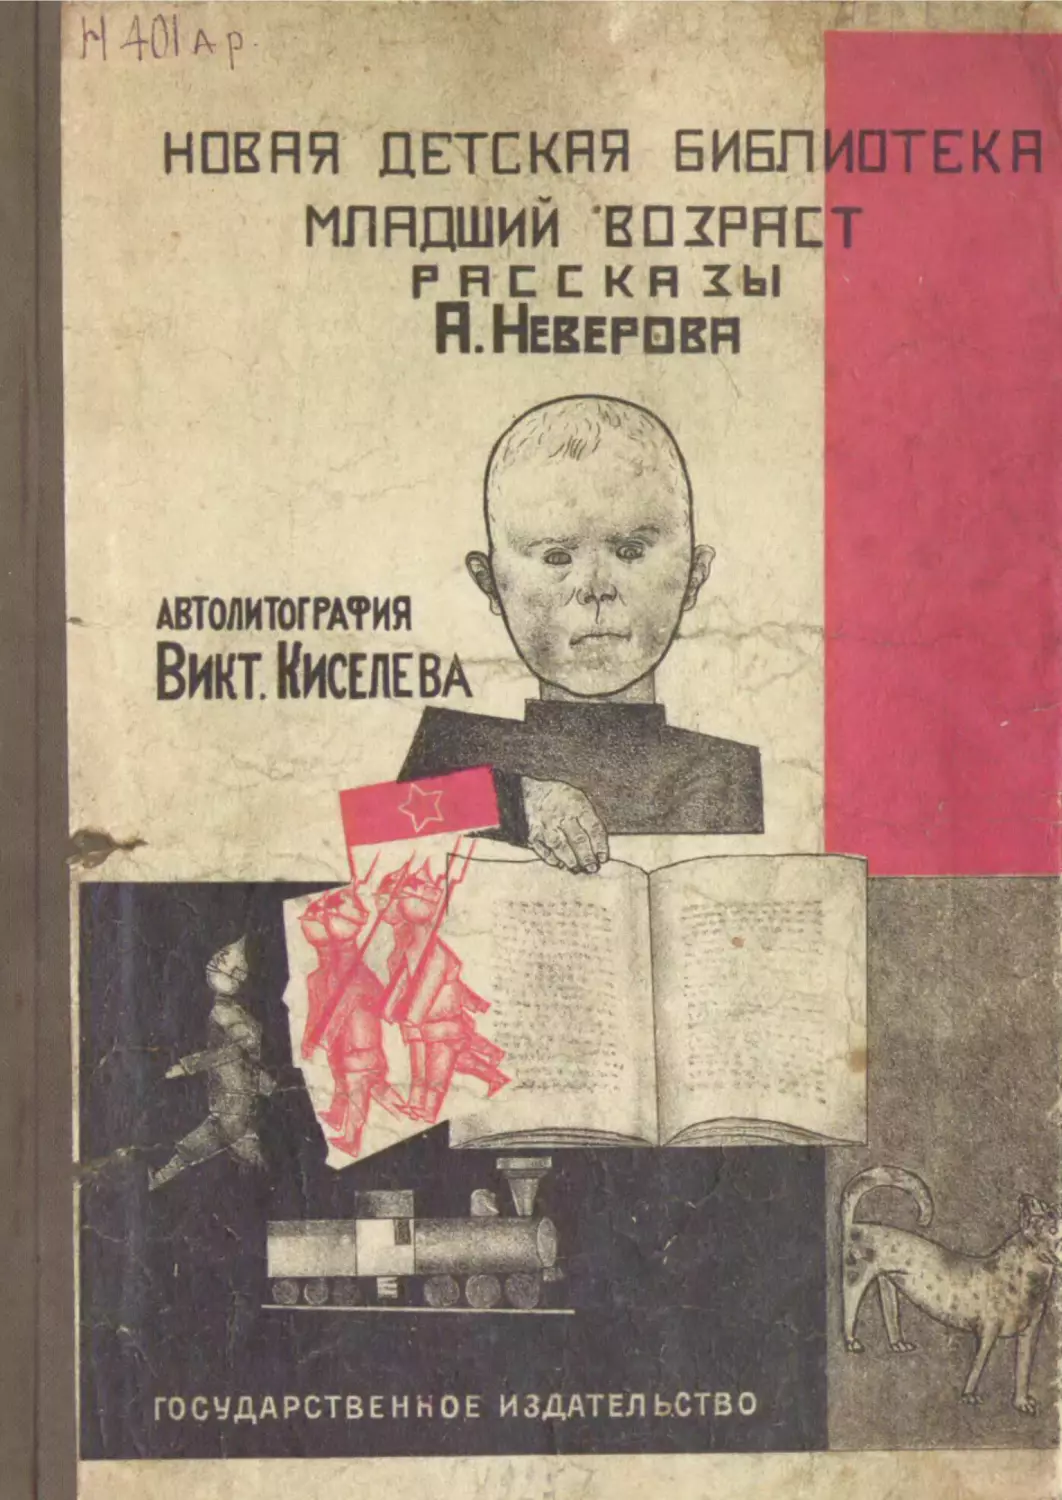 Книги 1925 года. Неверов маленькие рассказы. Детские книги а.с. Неверова.